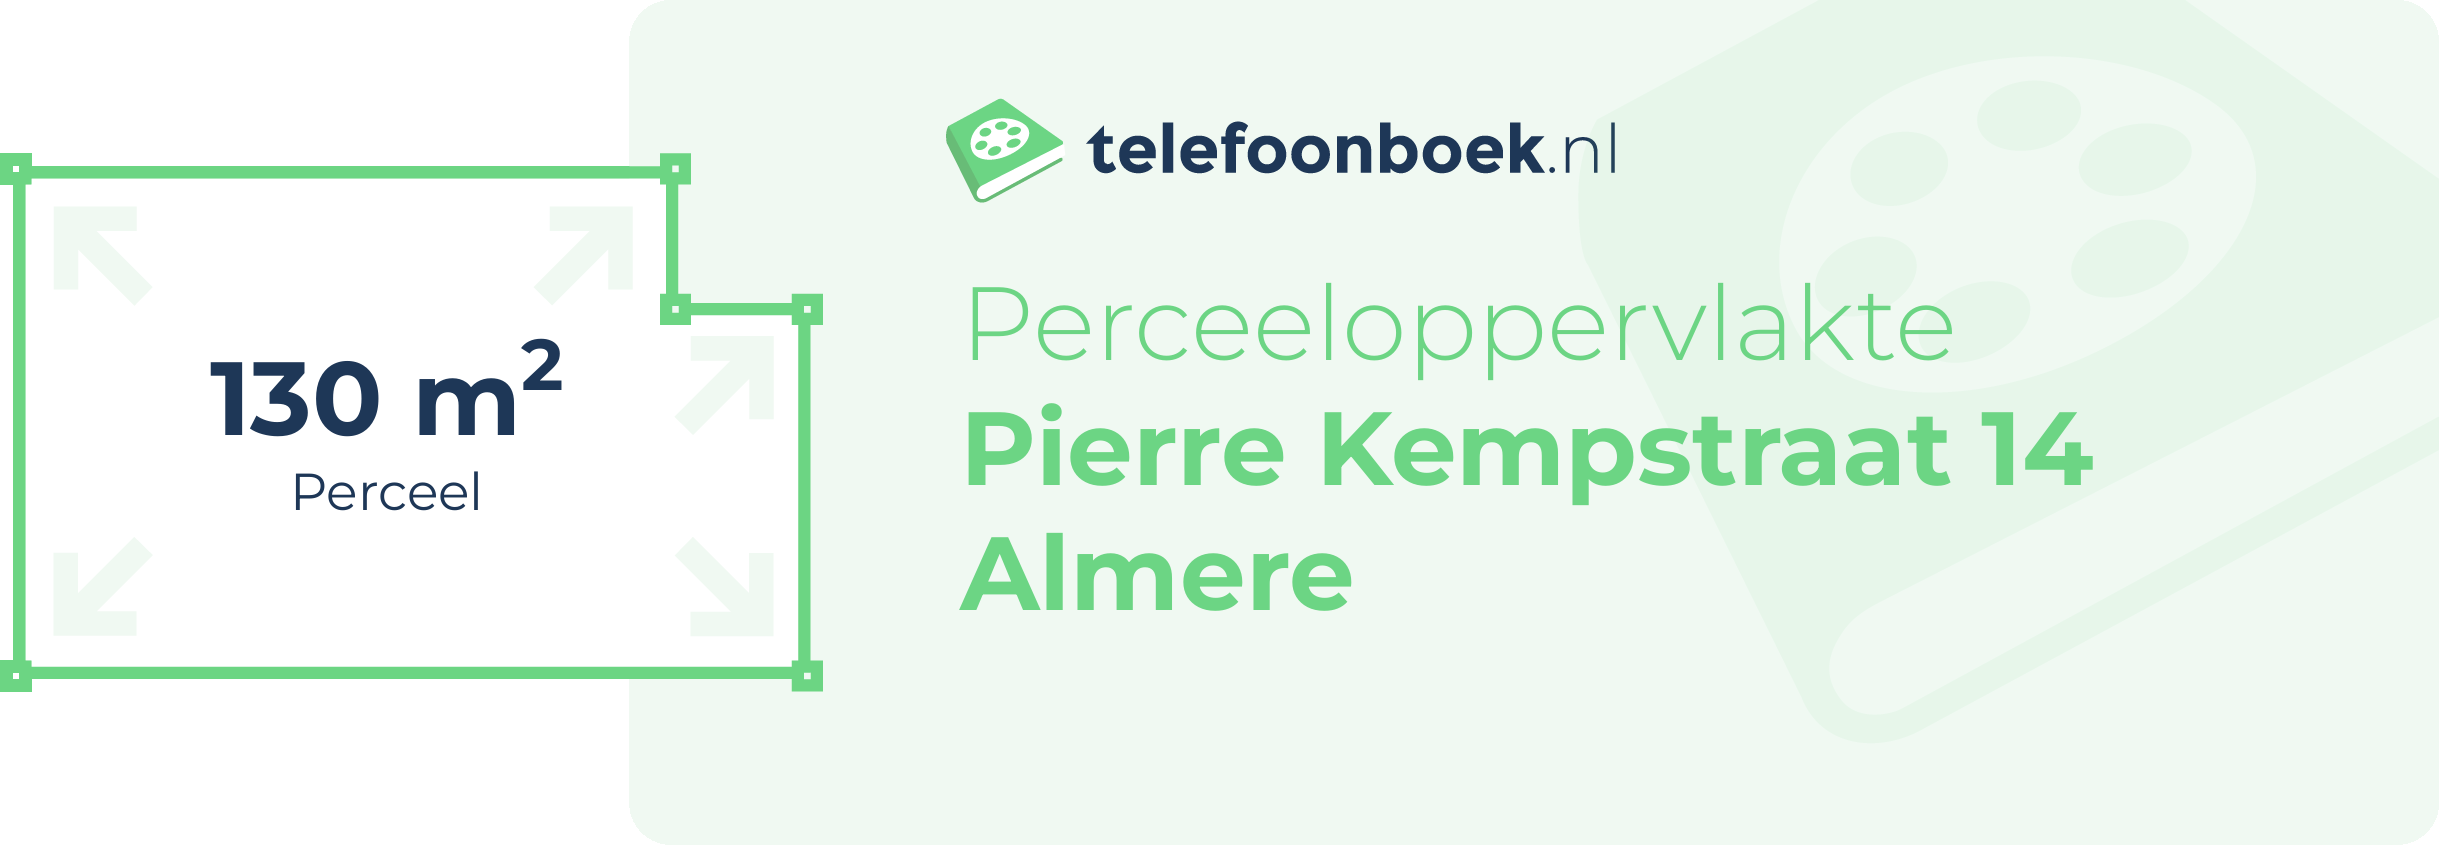 Perceeloppervlakte Pierre Kempstraat 14 Almere